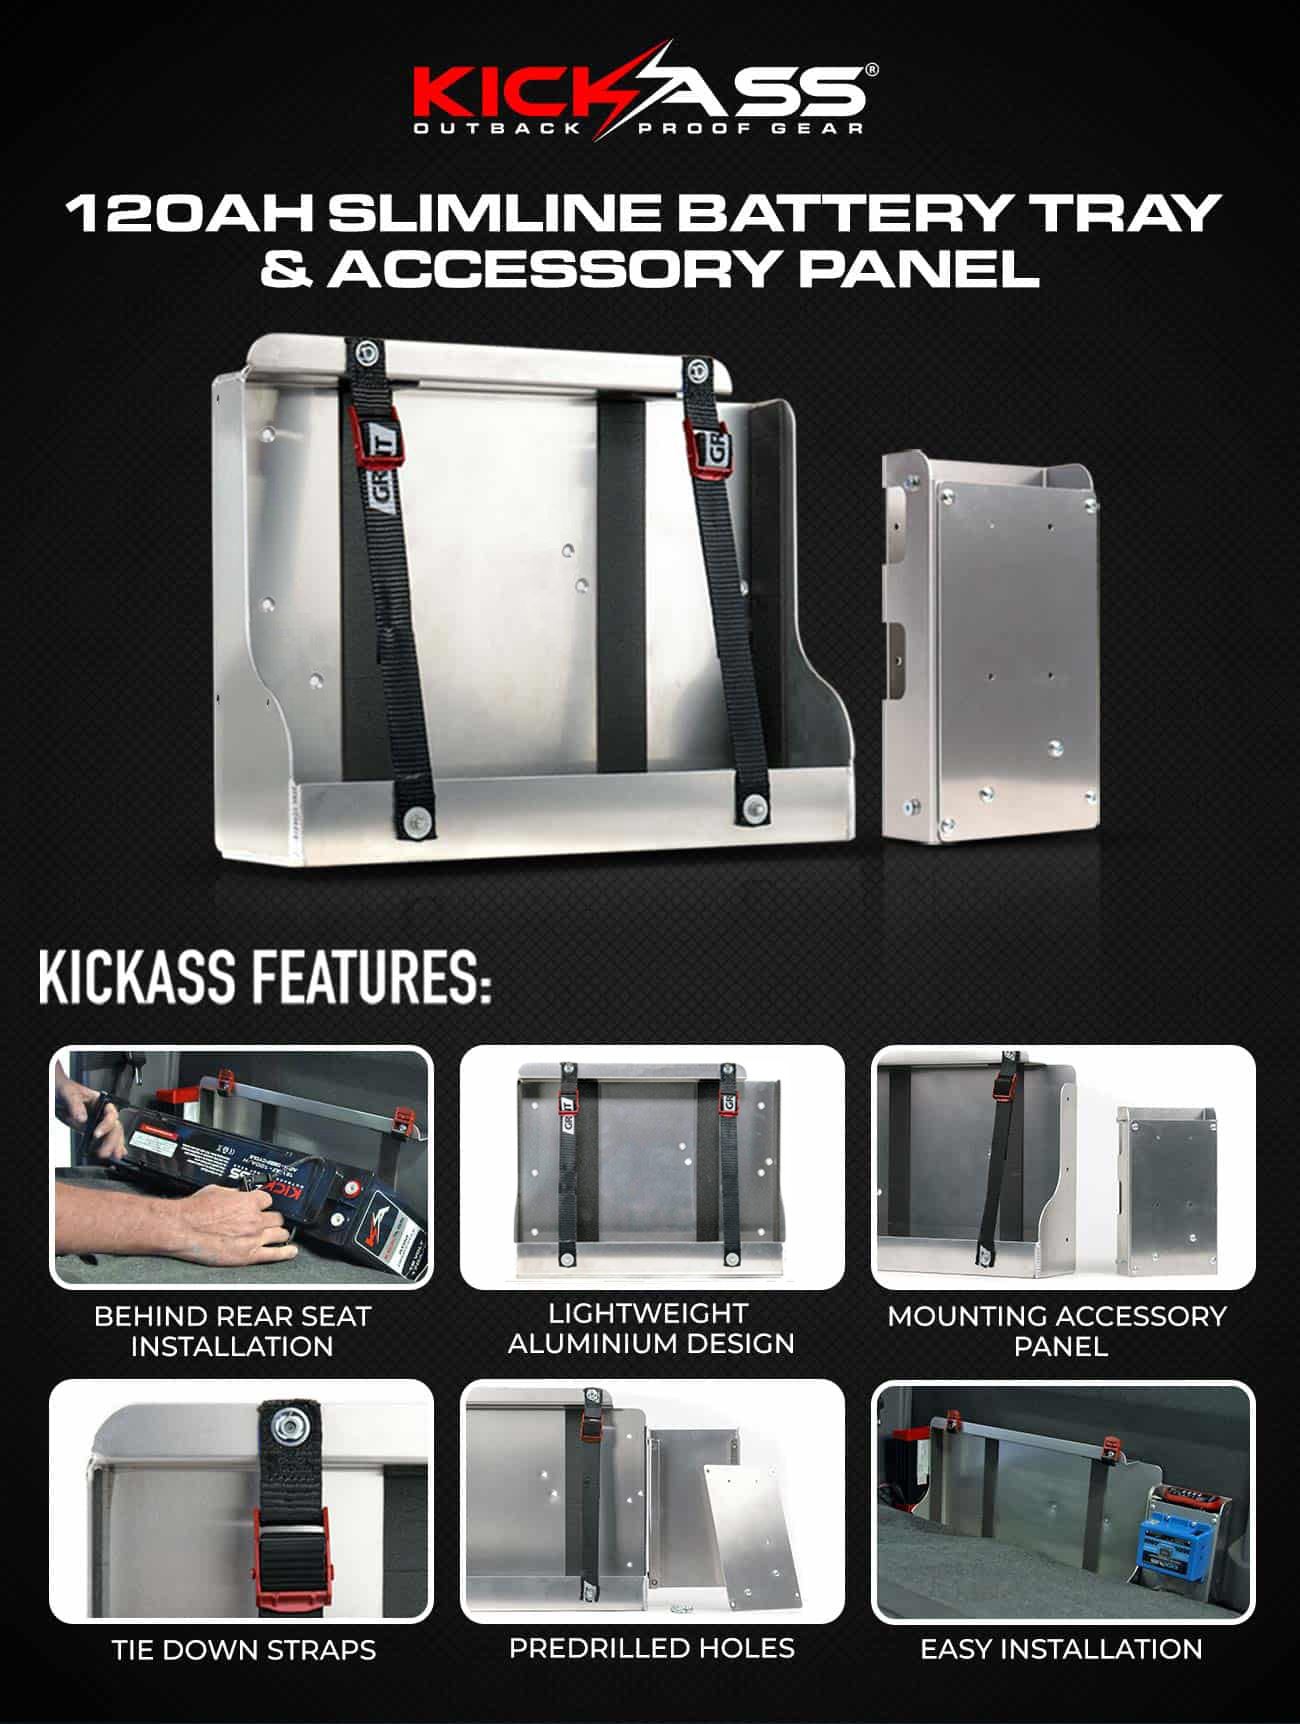 KICKASS 120Ah Slimline Battery Tray & Accessory Panel